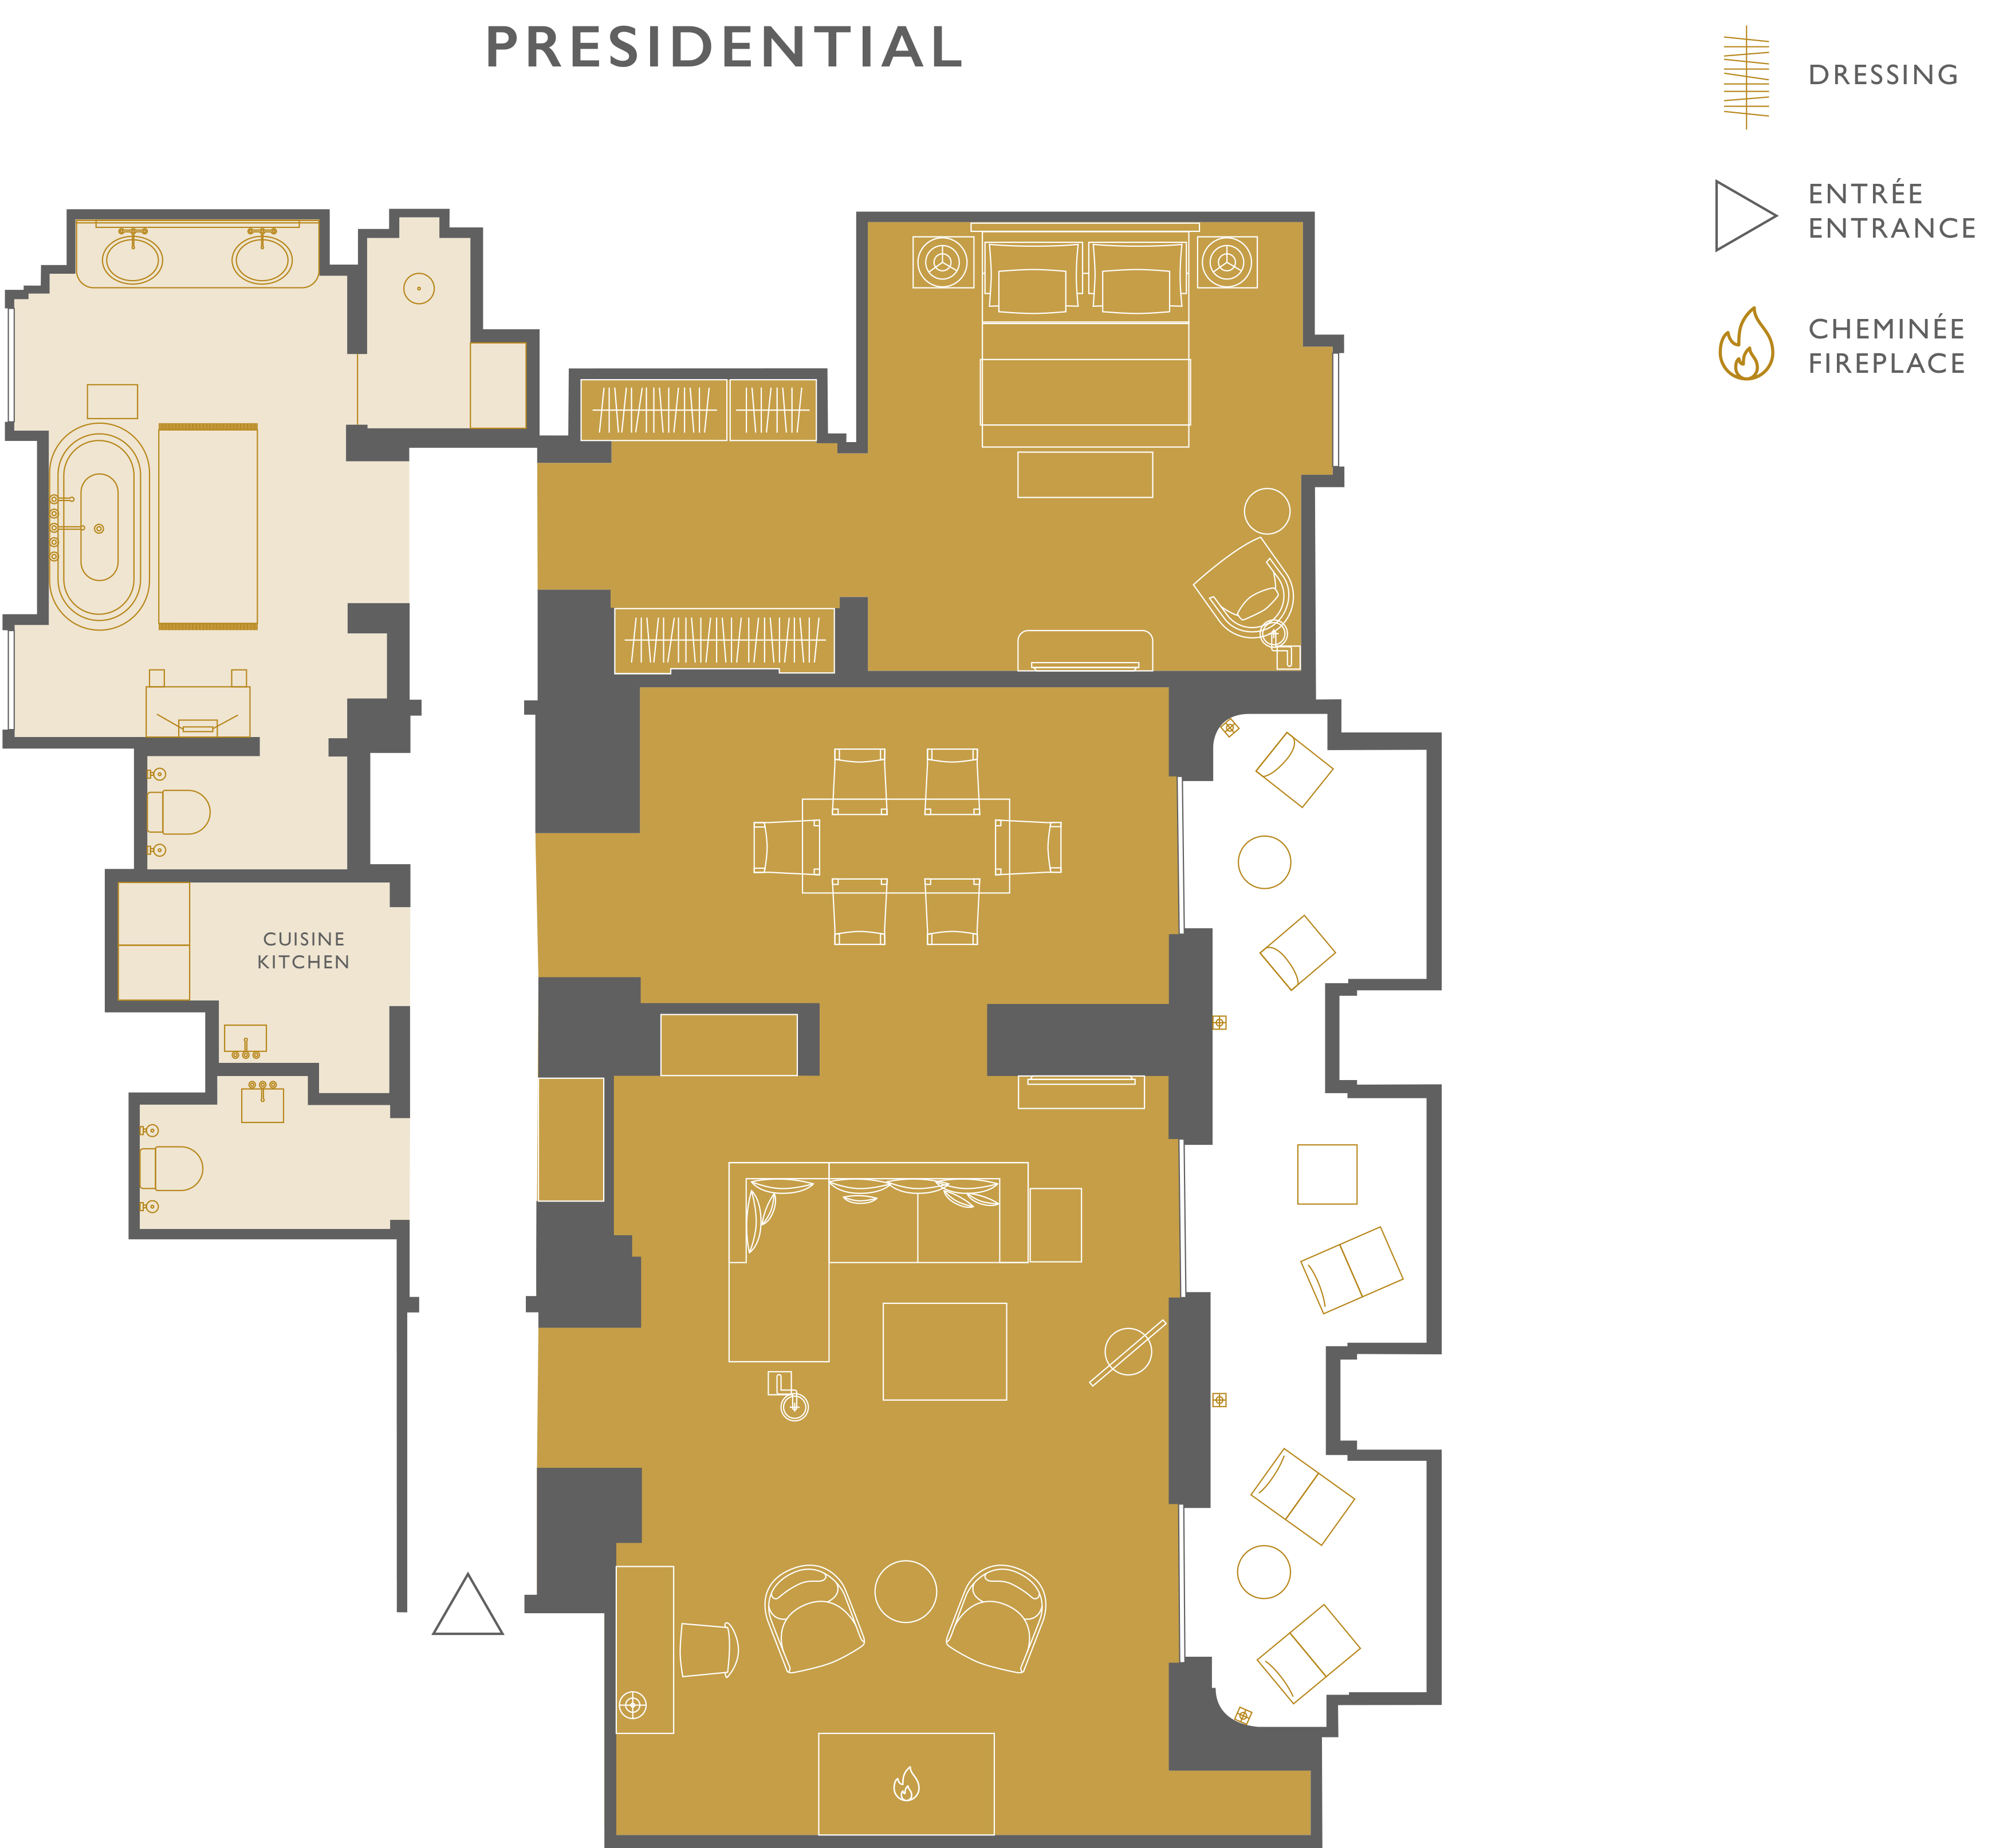 Presidential Suite Plan